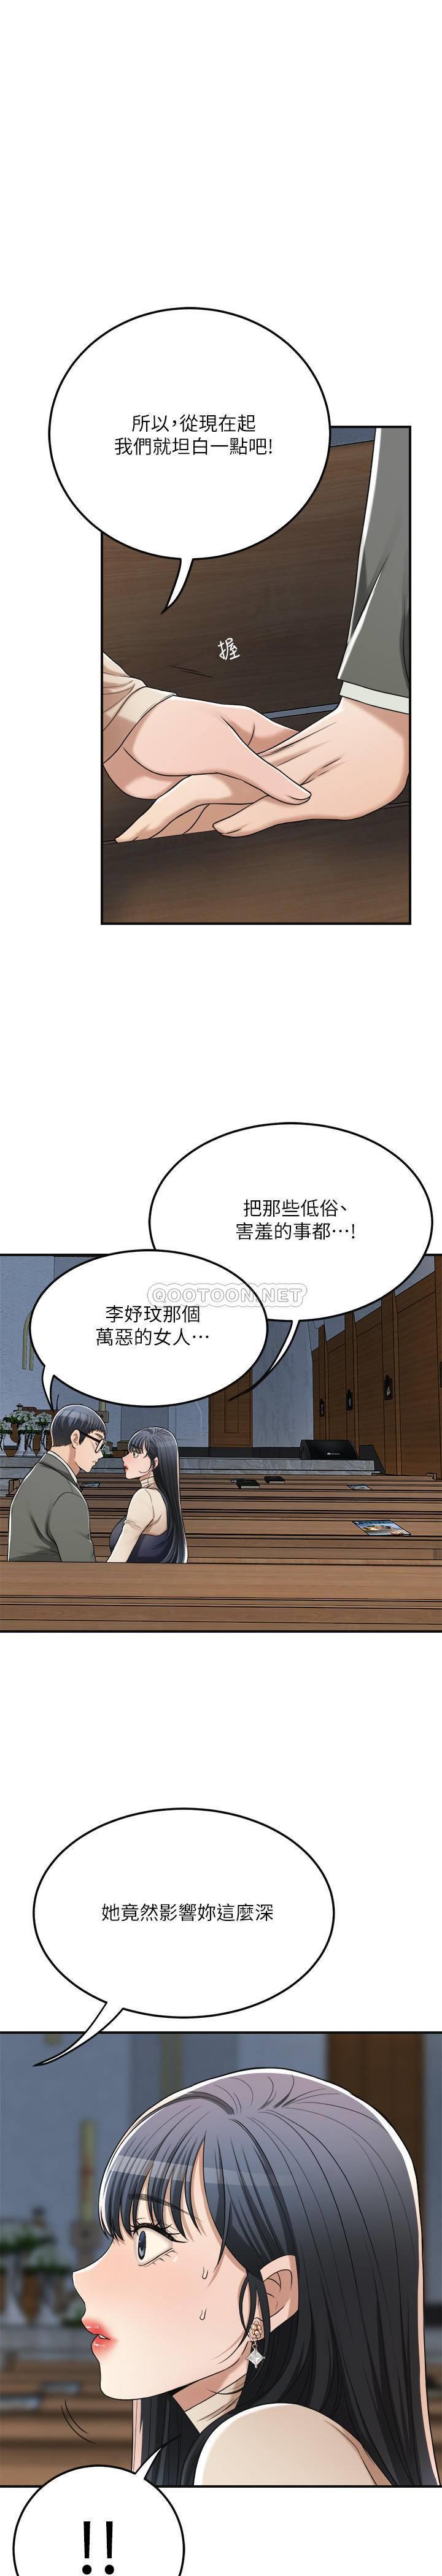 《抑欲人妻》漫画 第40话 - 决定离家出走的筱妍